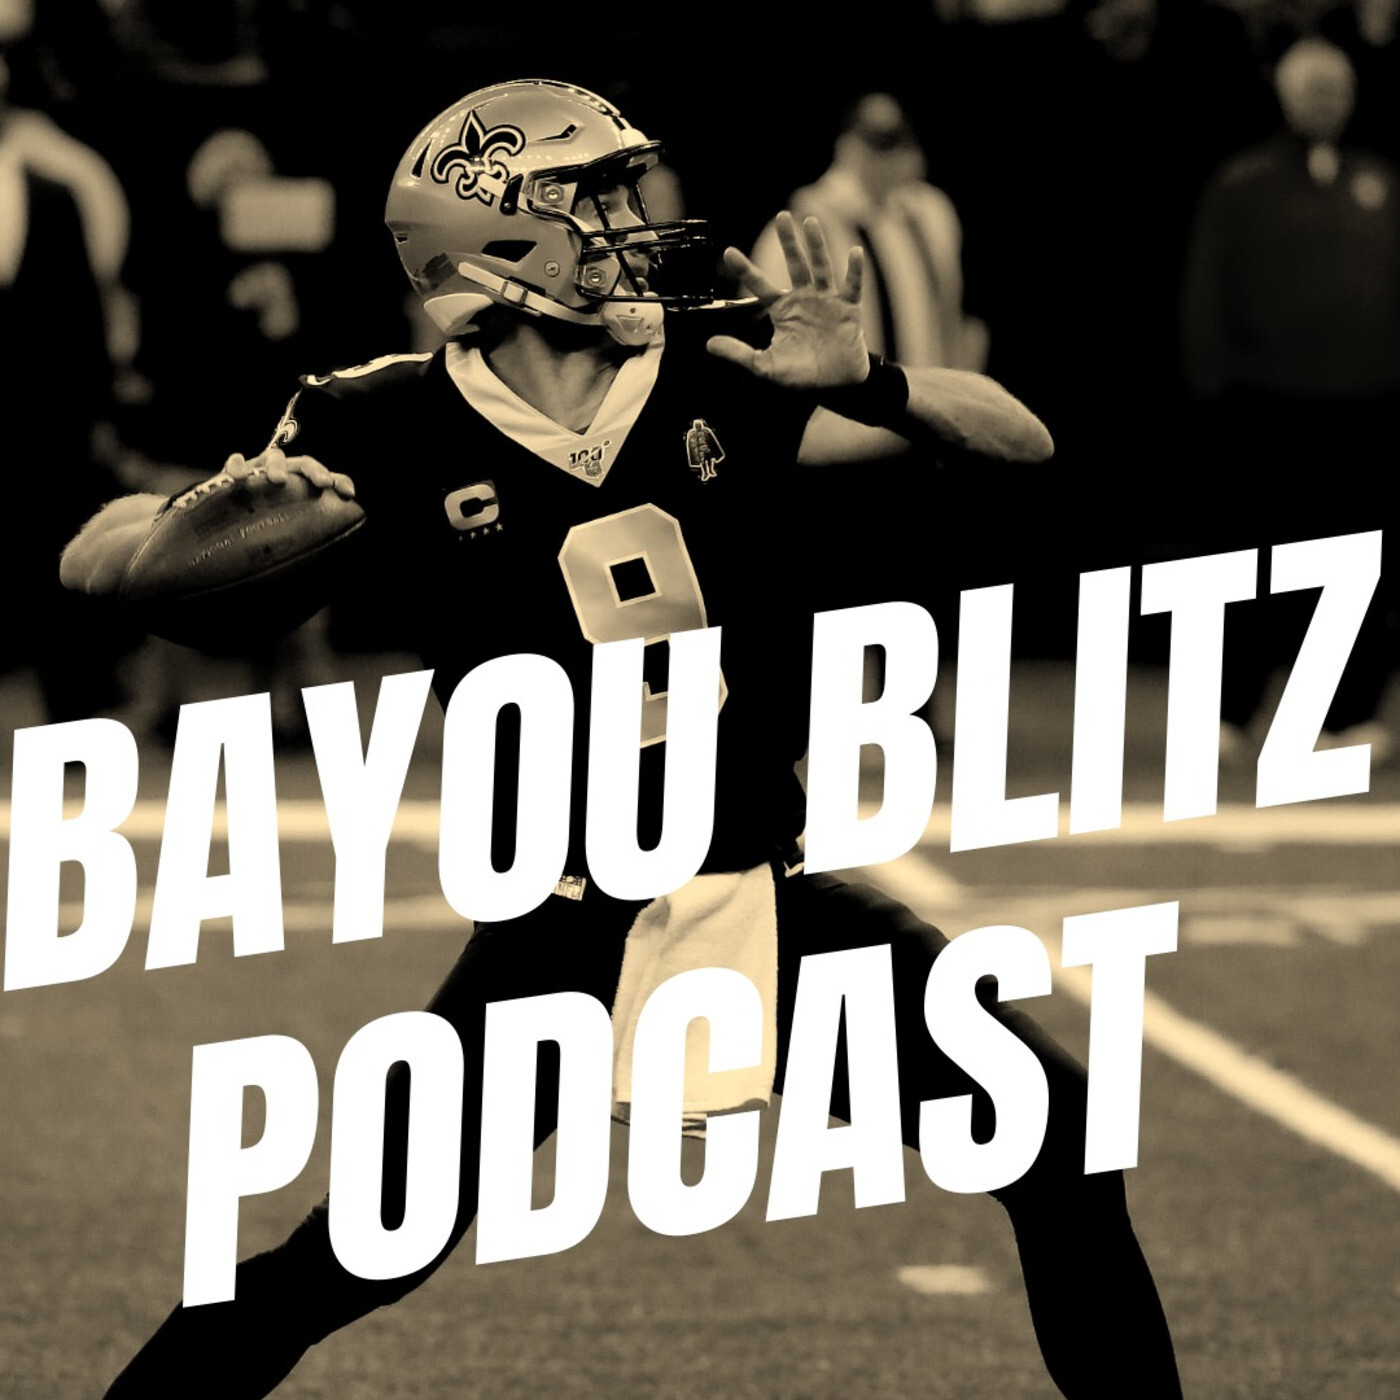 Bayou Blitz: Saints Defeat Panthers Recap